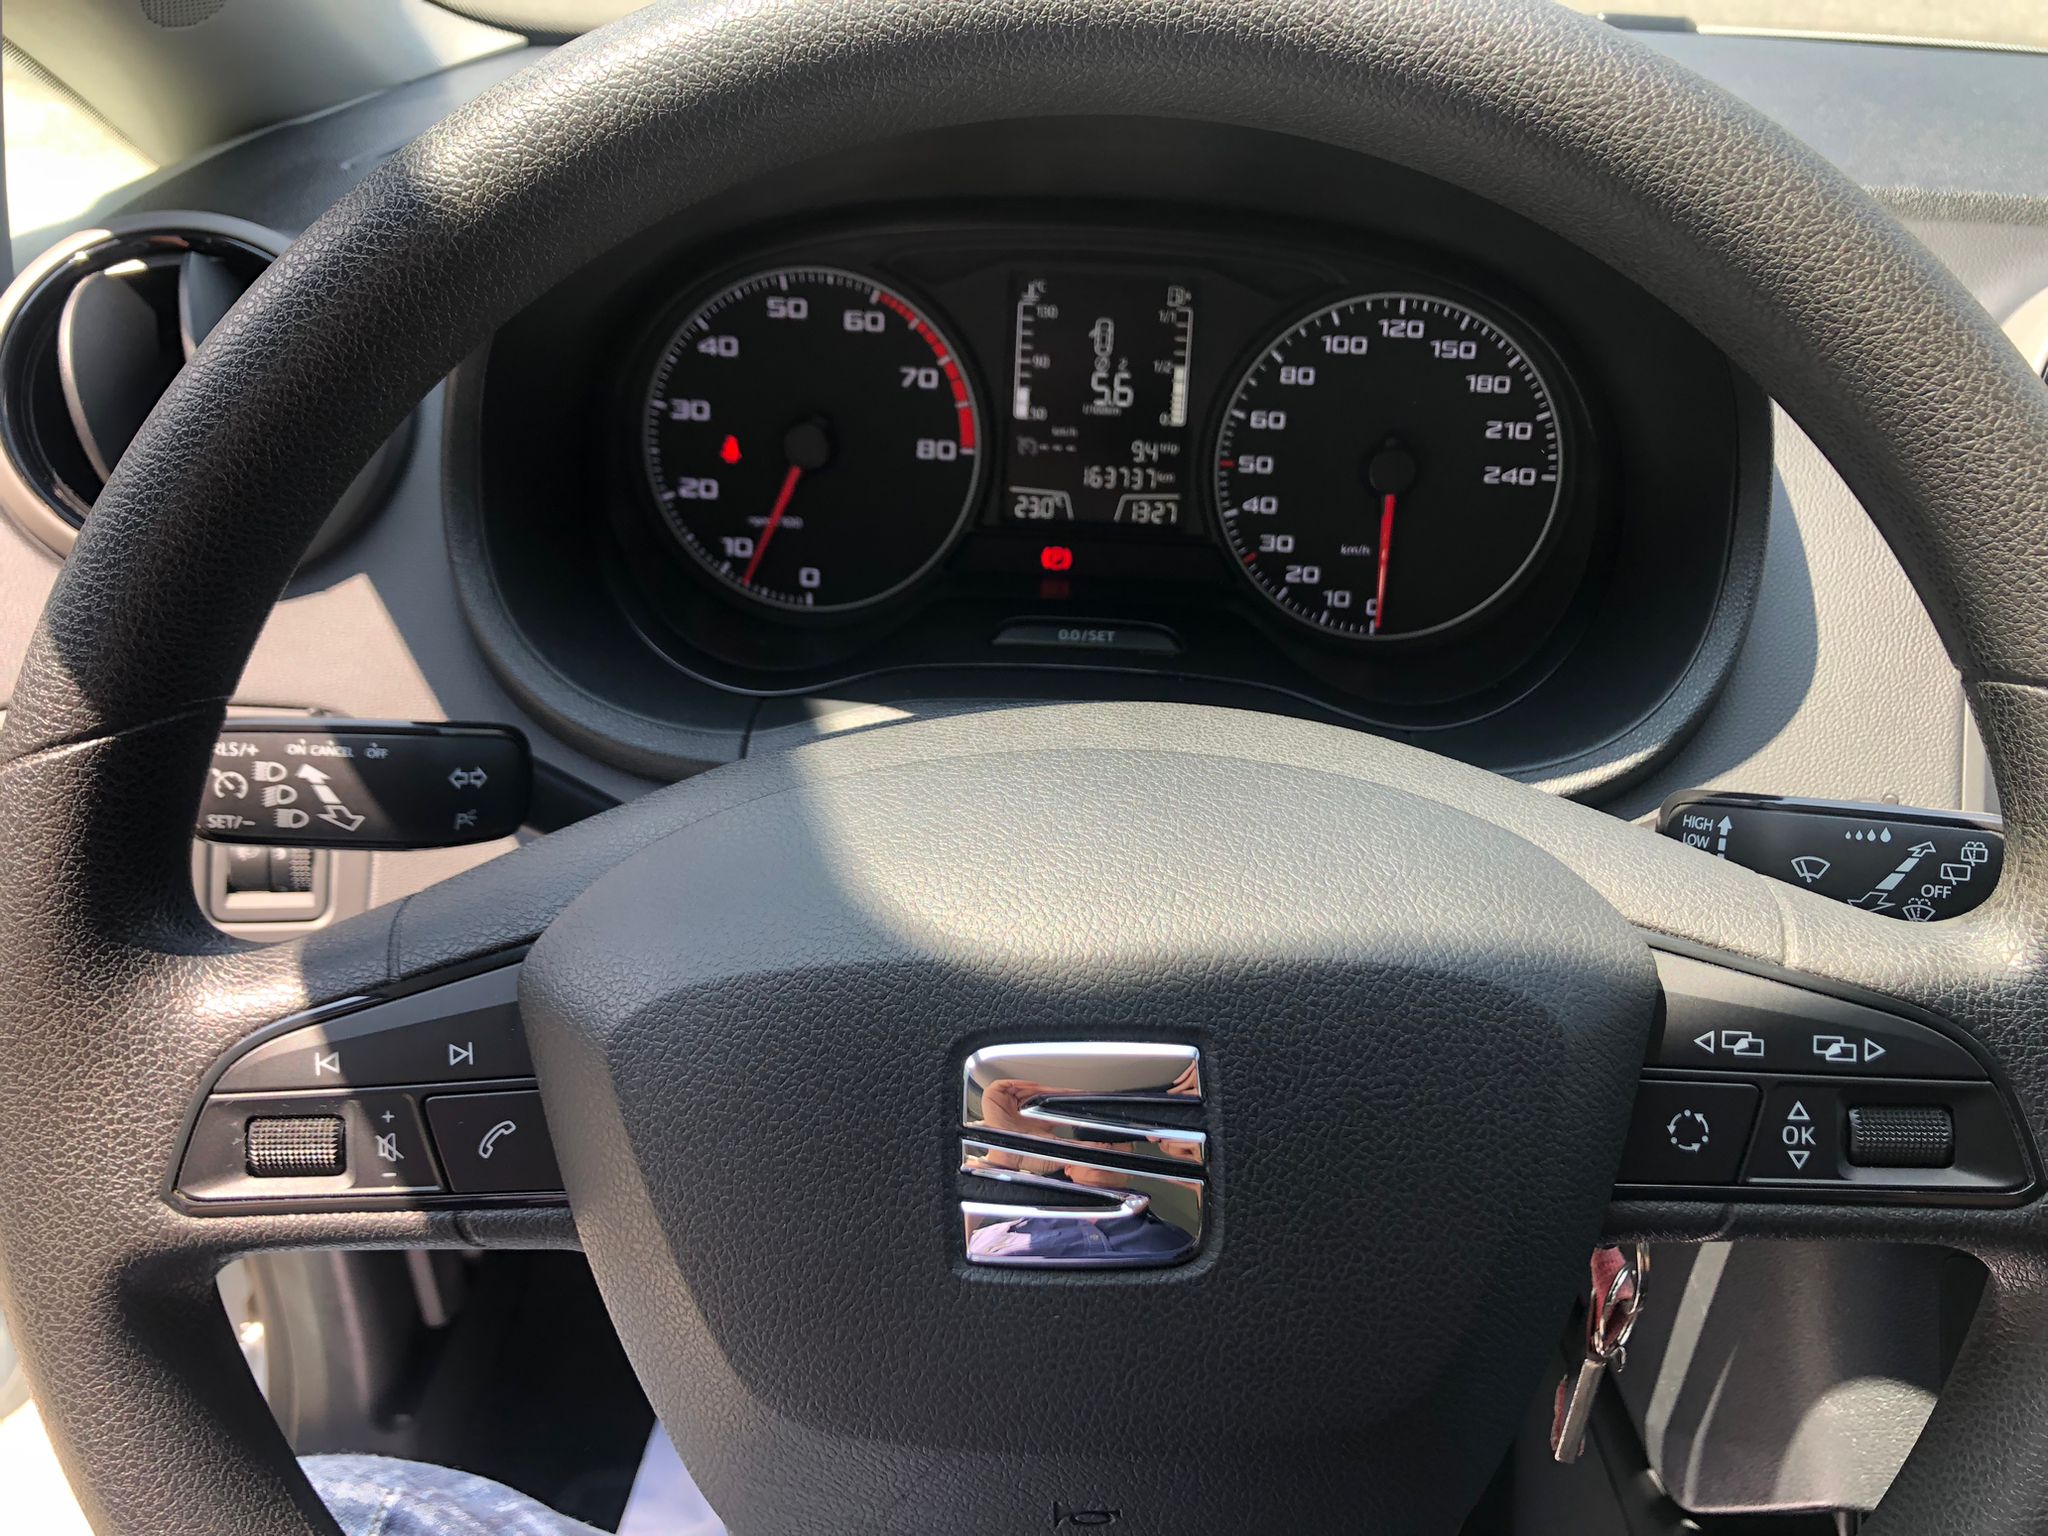 SEAT Ibiza 1.2 TSI - volante y cuadro de mandos